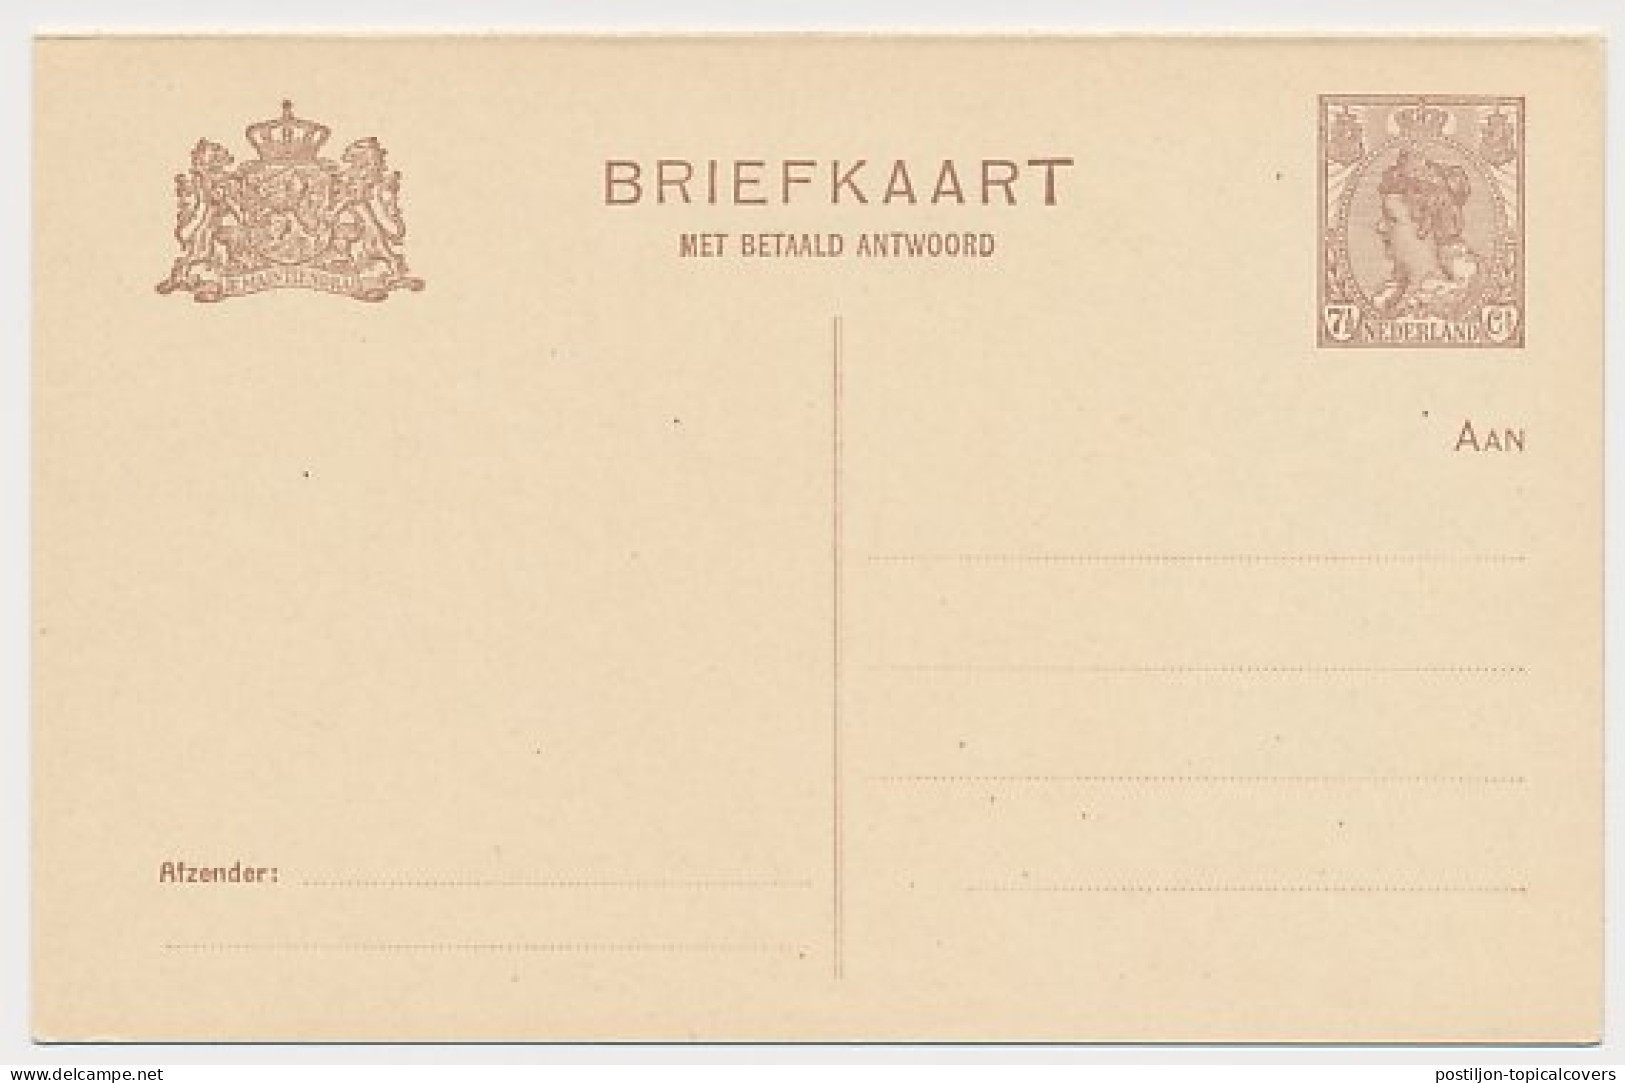 Briefkaart G. 123 I - Ganzsachen